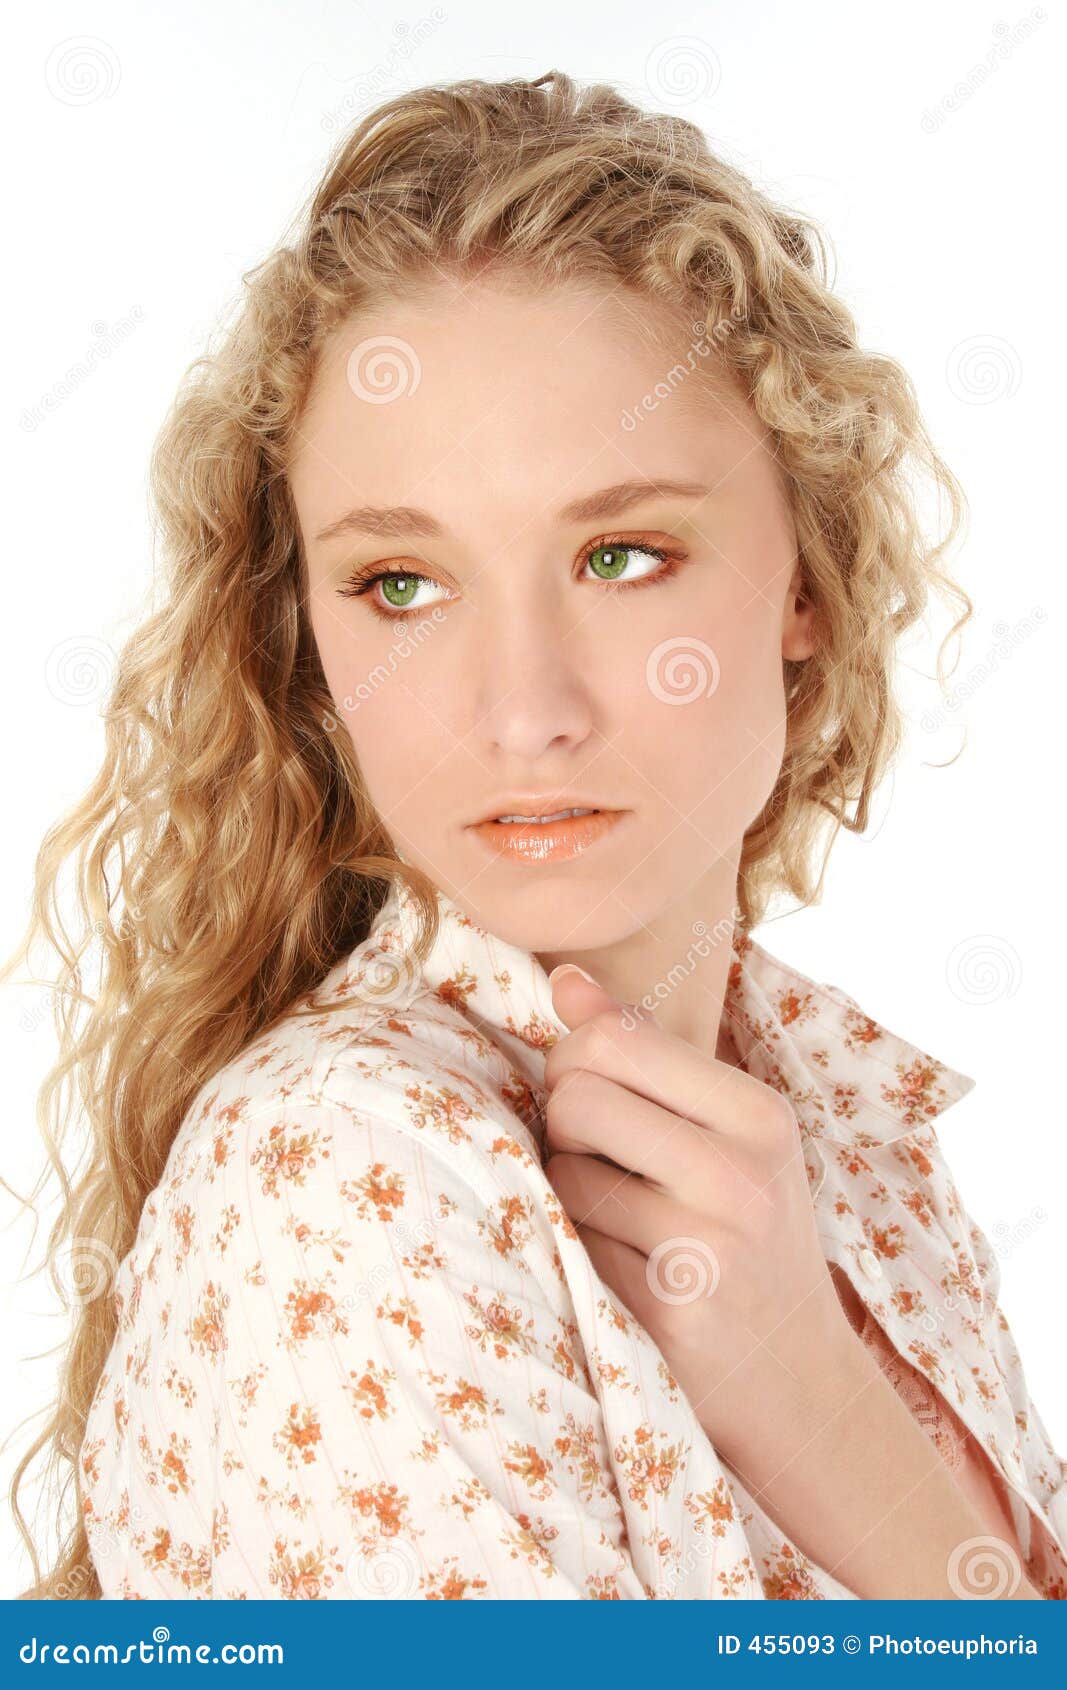 Blonde Hair Green Eyes Stock Image Image Of Teen Glamorous 455093